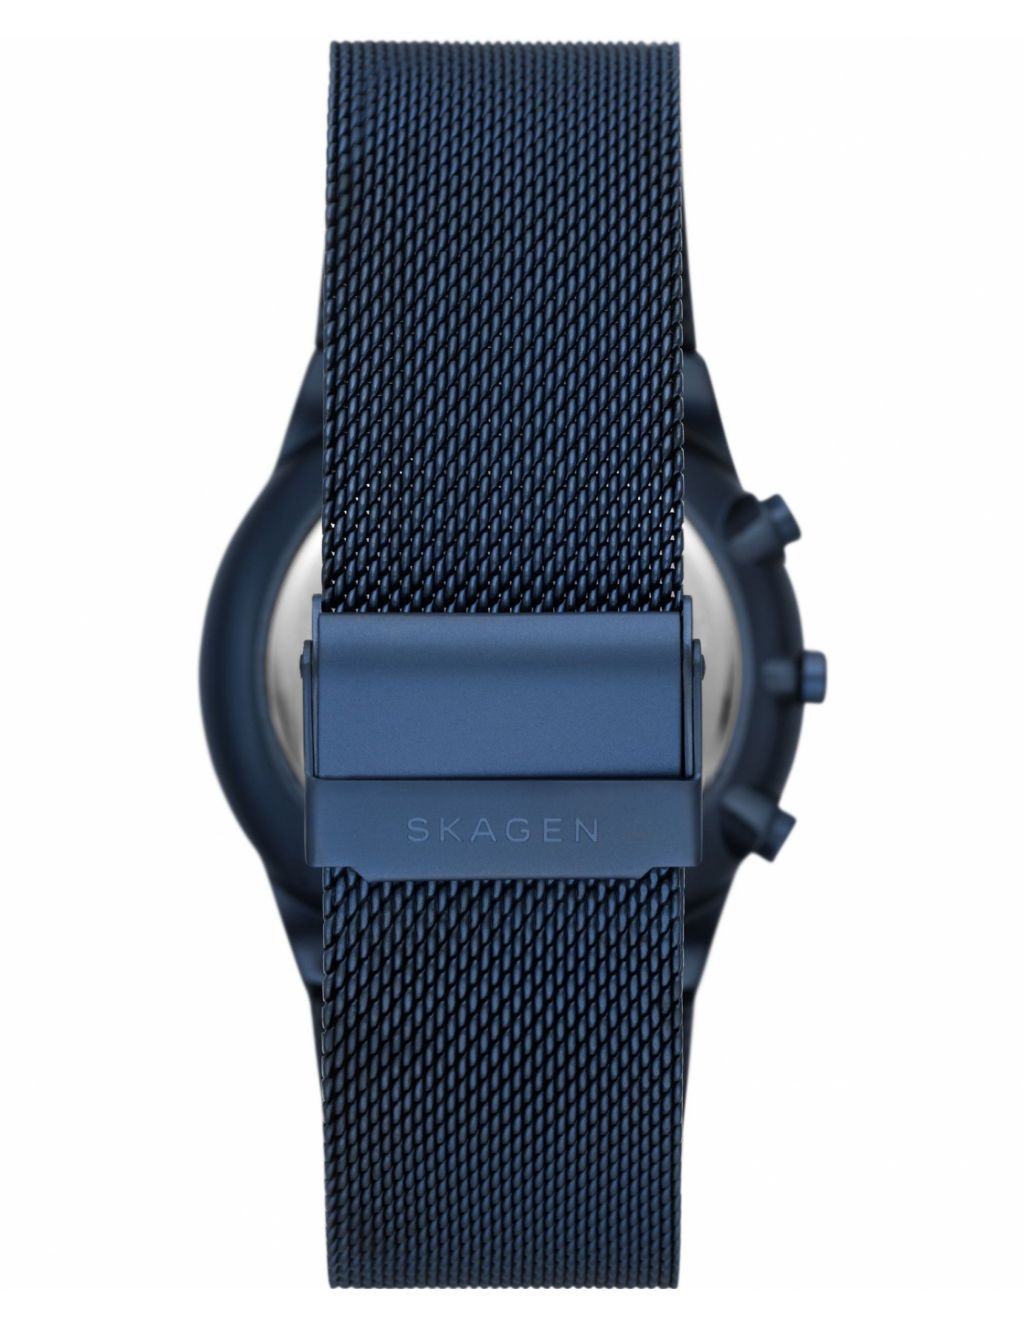 Skagen Stainless Steel Blue Chronograph Quartz Watch image 3